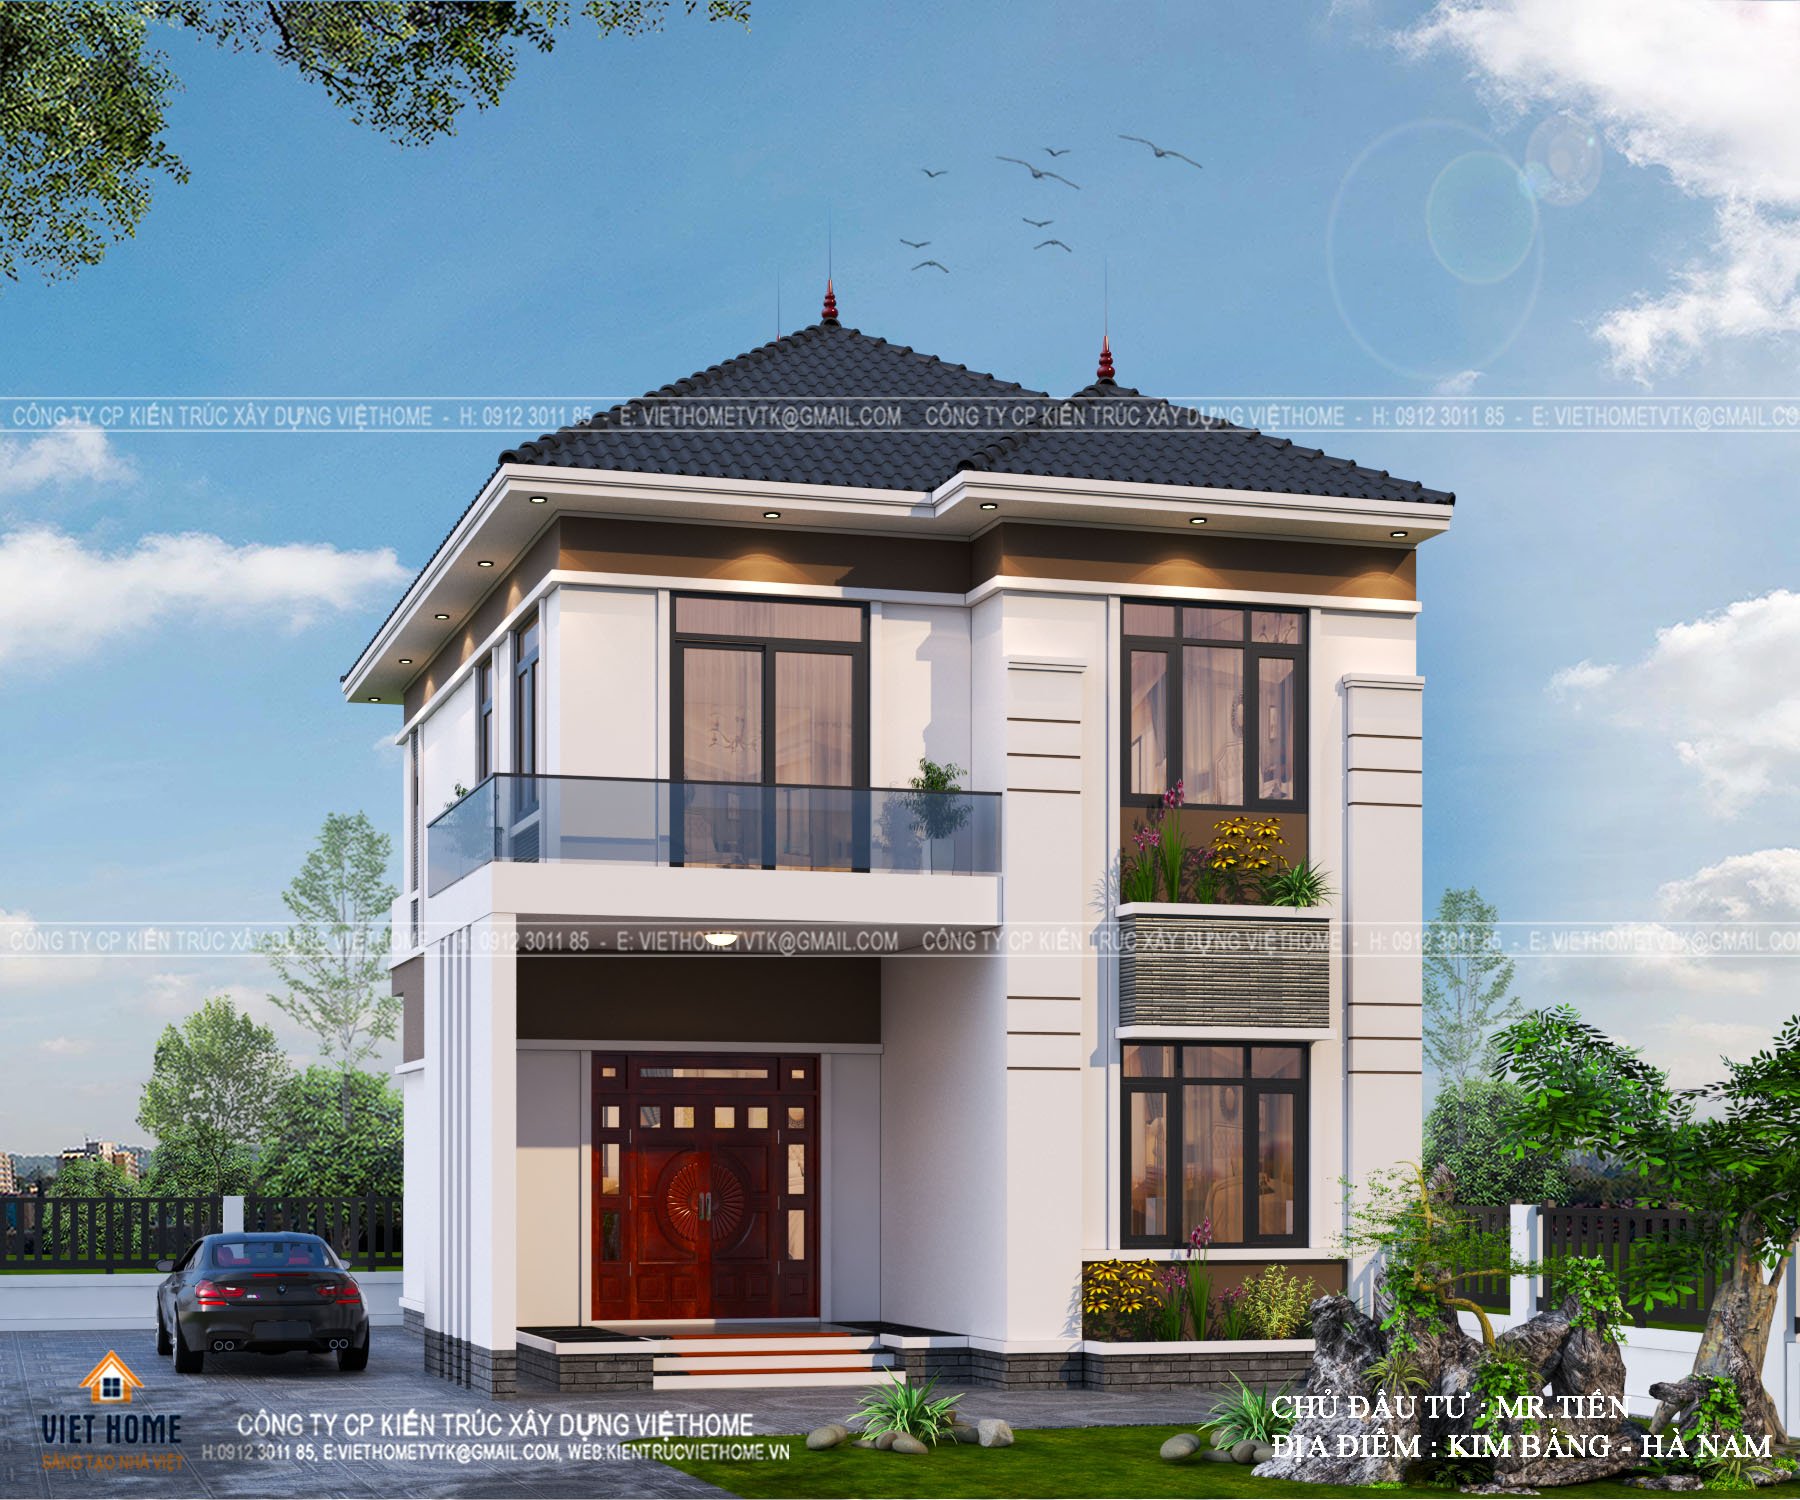 Top 10 mẫu nhà 2 tầng 300 triệu ở nông thôn đẹp  Xây Dựng Minh Phương Tiến